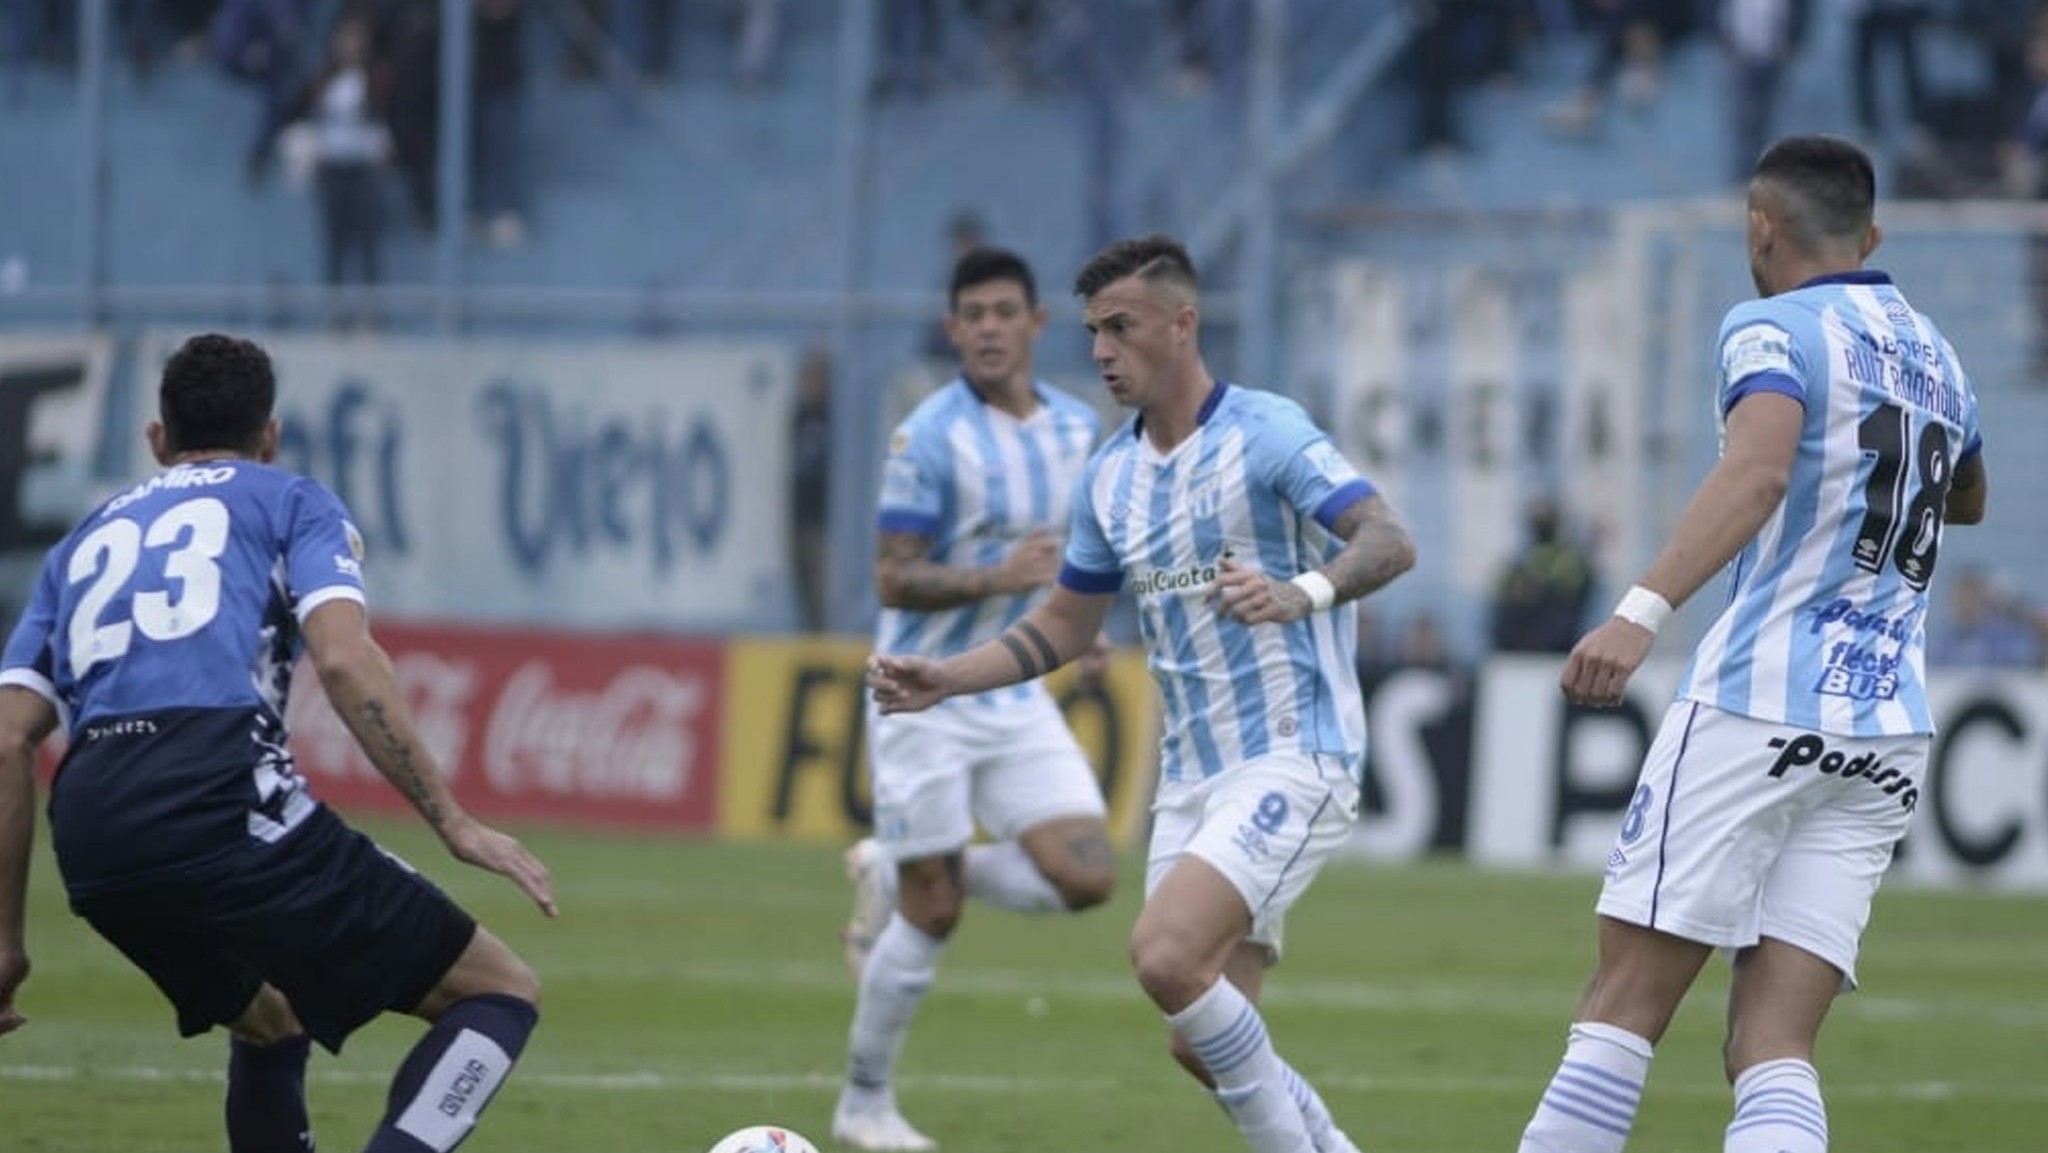 ¿Cómo está el historial entre Talleres y Atlético Tucumán? | Canal Showsport